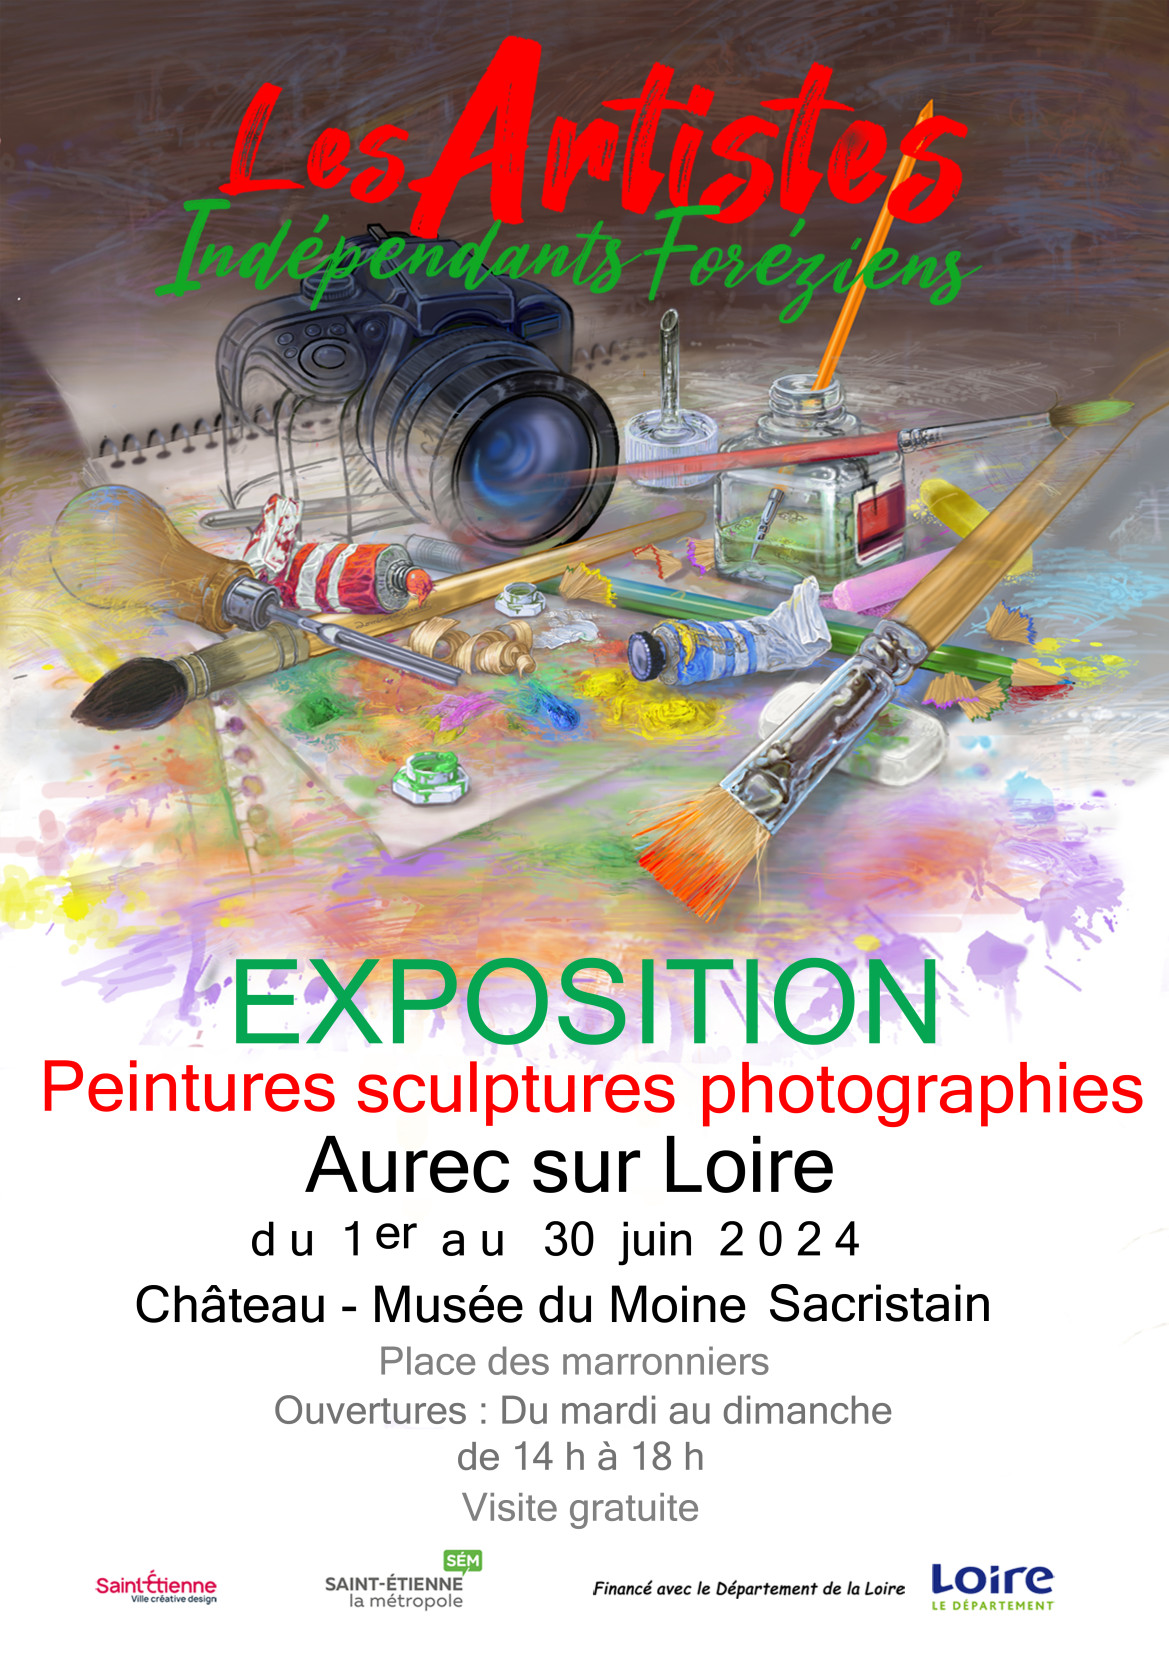 Exposition Les Artistes Indépendants Forézien